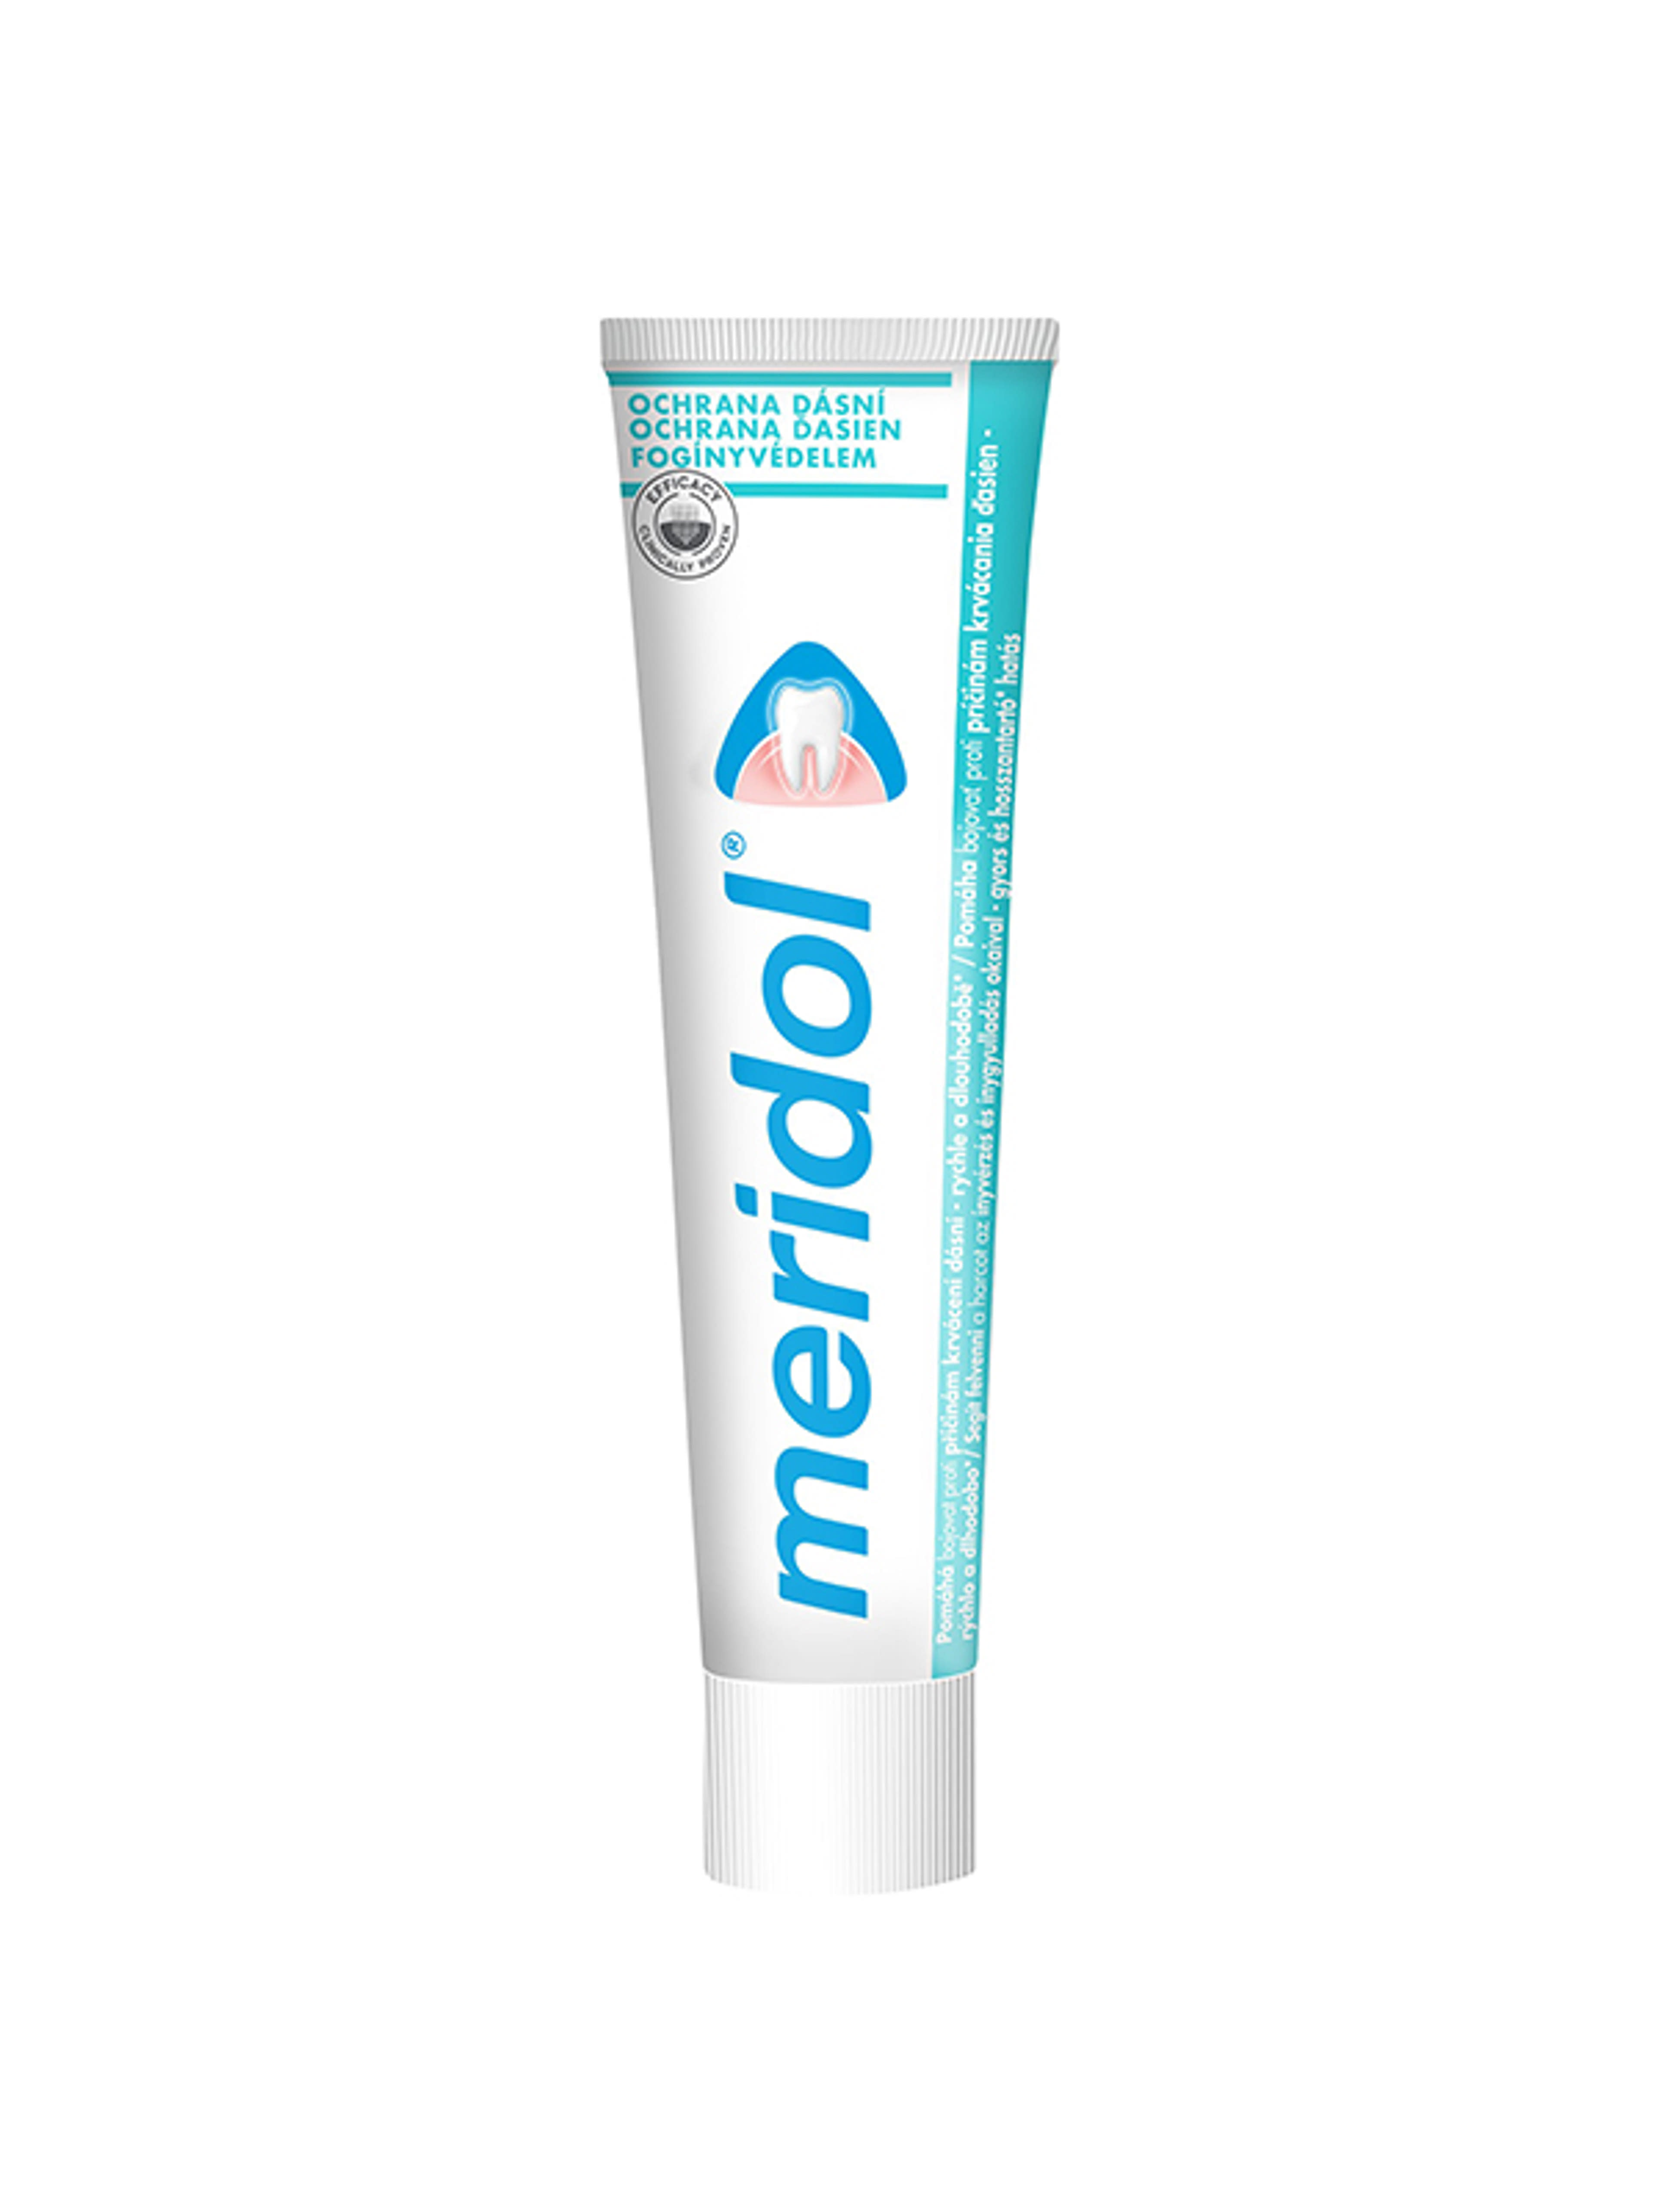 Meridol Fogínyvédelem fogkrém - 75 ml-8